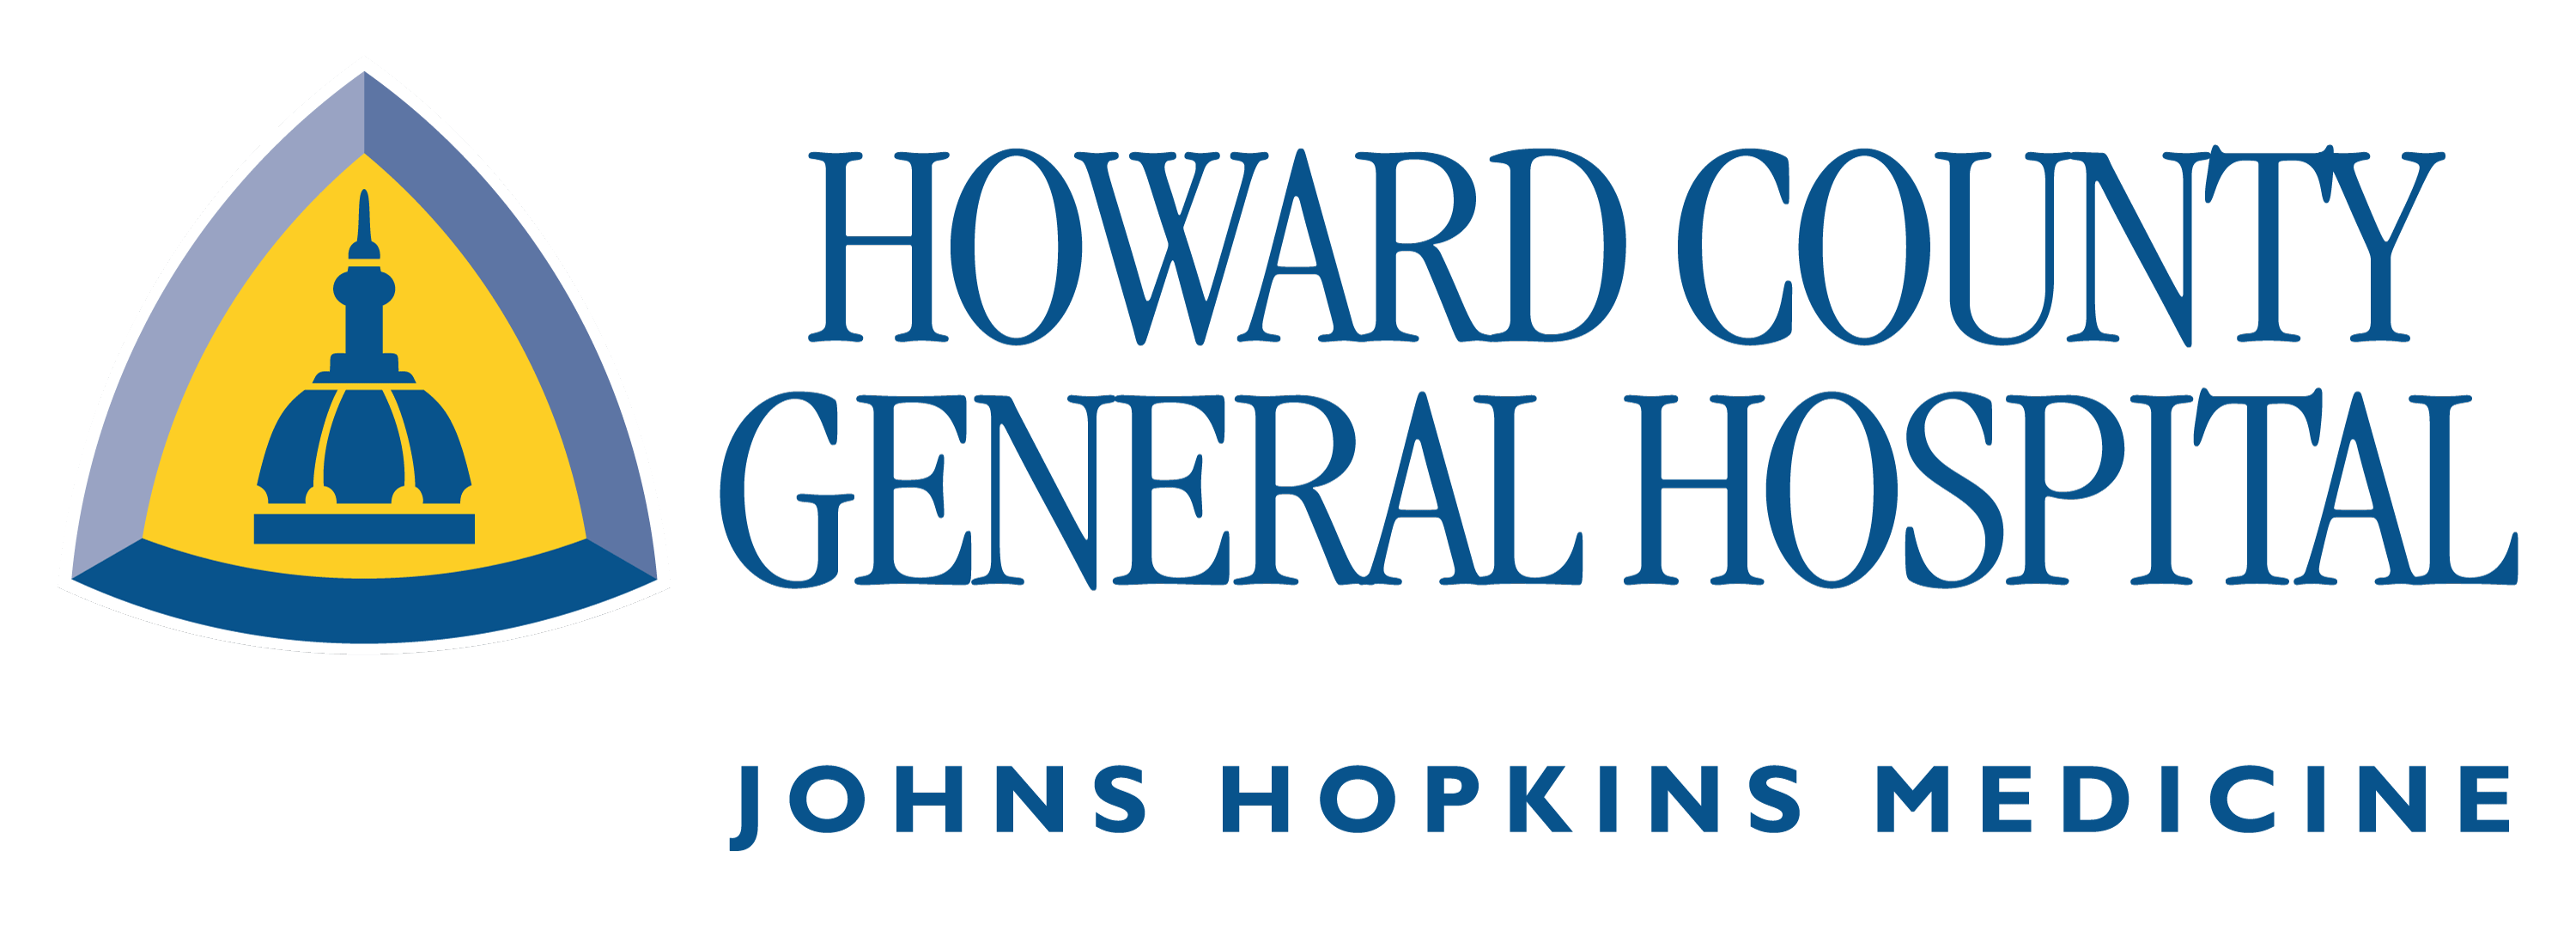 hcgh_logo-1